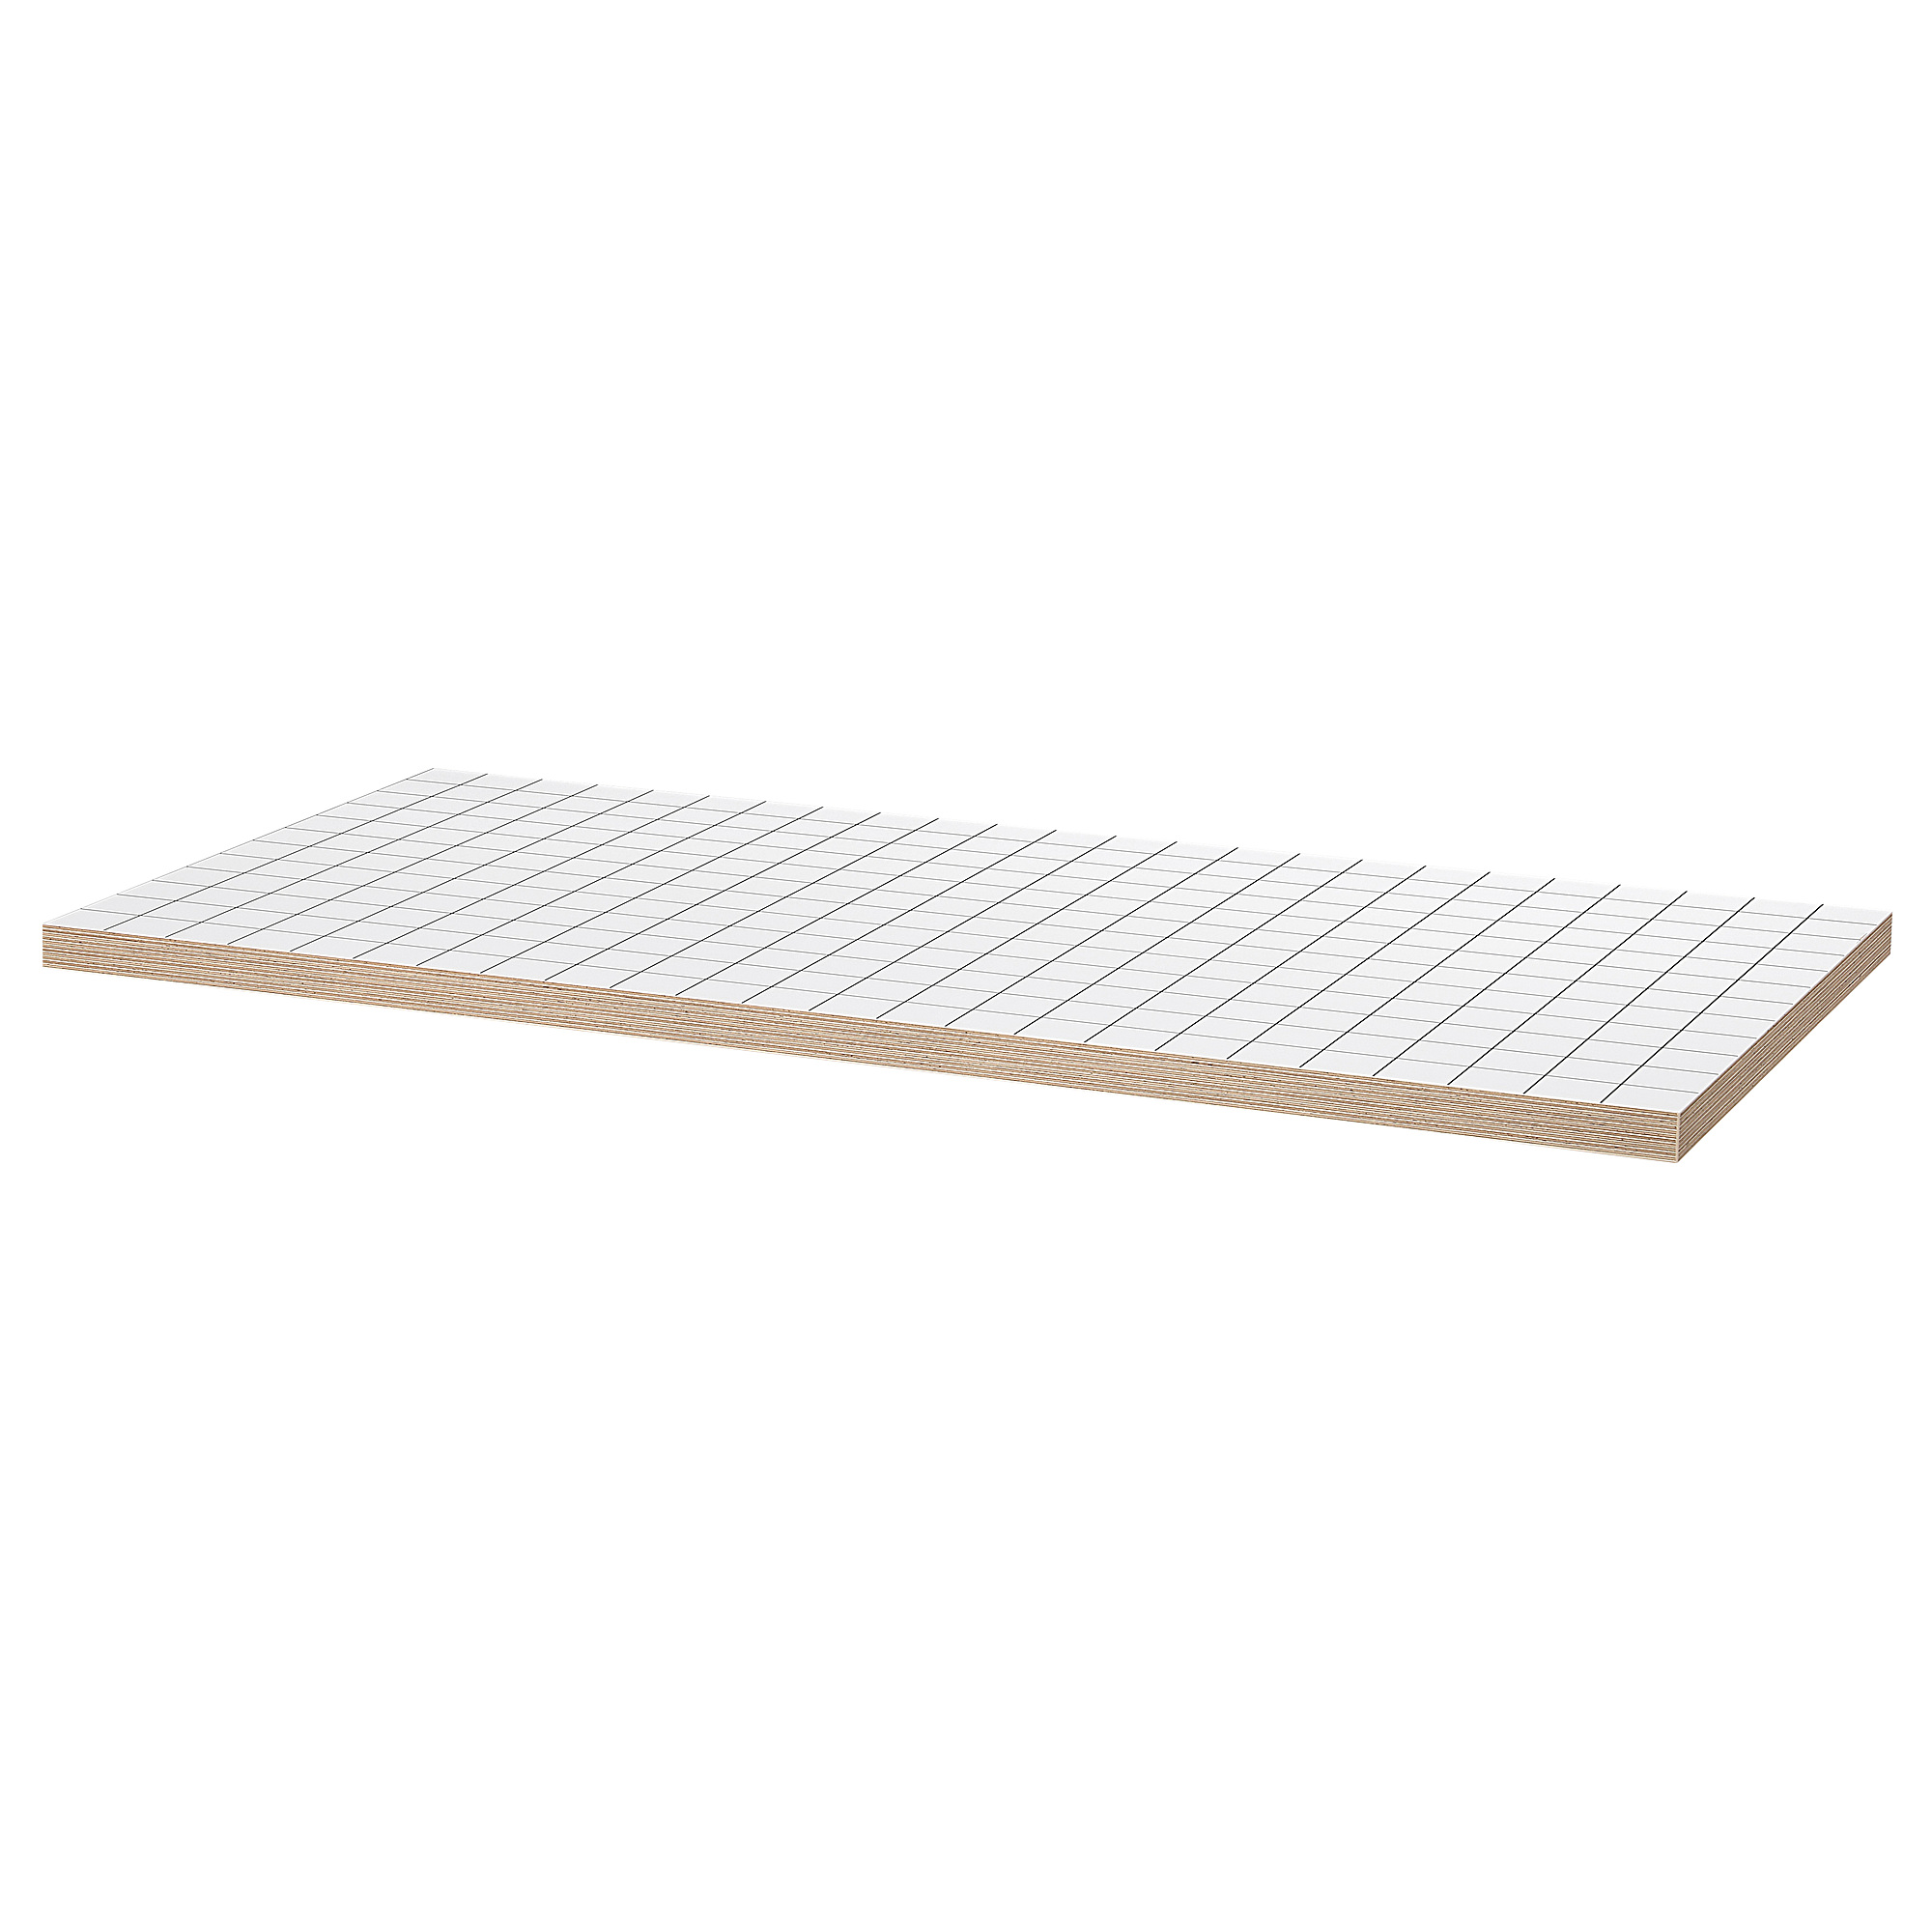 LAGKAPTEN - 檯面板, 白色/炭黑色, 120x60 厘米| IKEA 香港及澳門